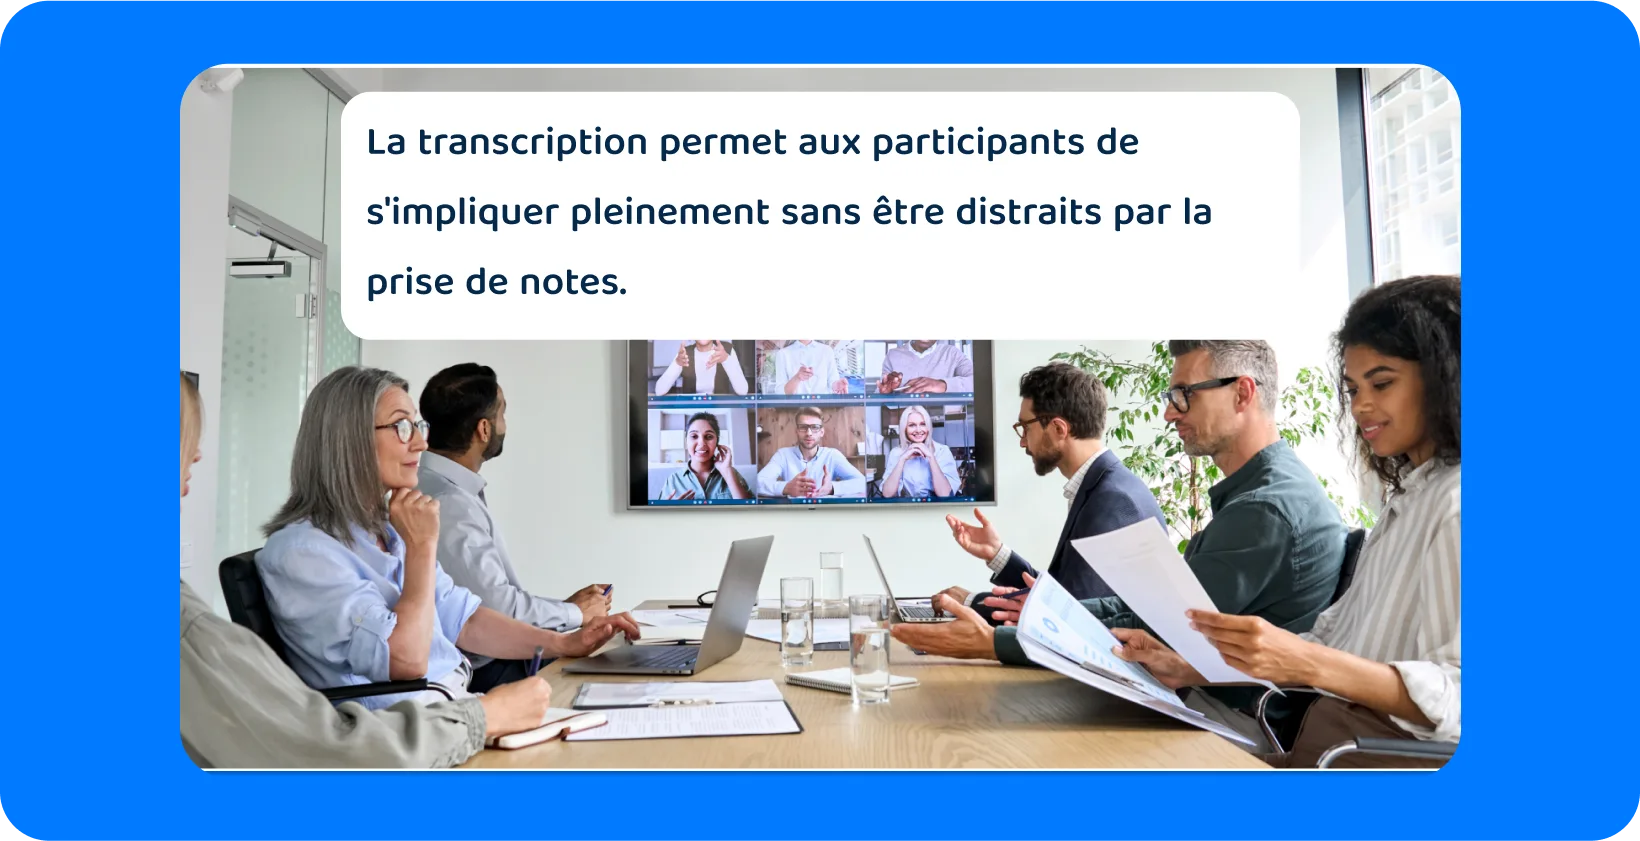 Réunion d’équipe avec les participants en personne et virtuels, soulignant la nécessité d’une transcription complète.